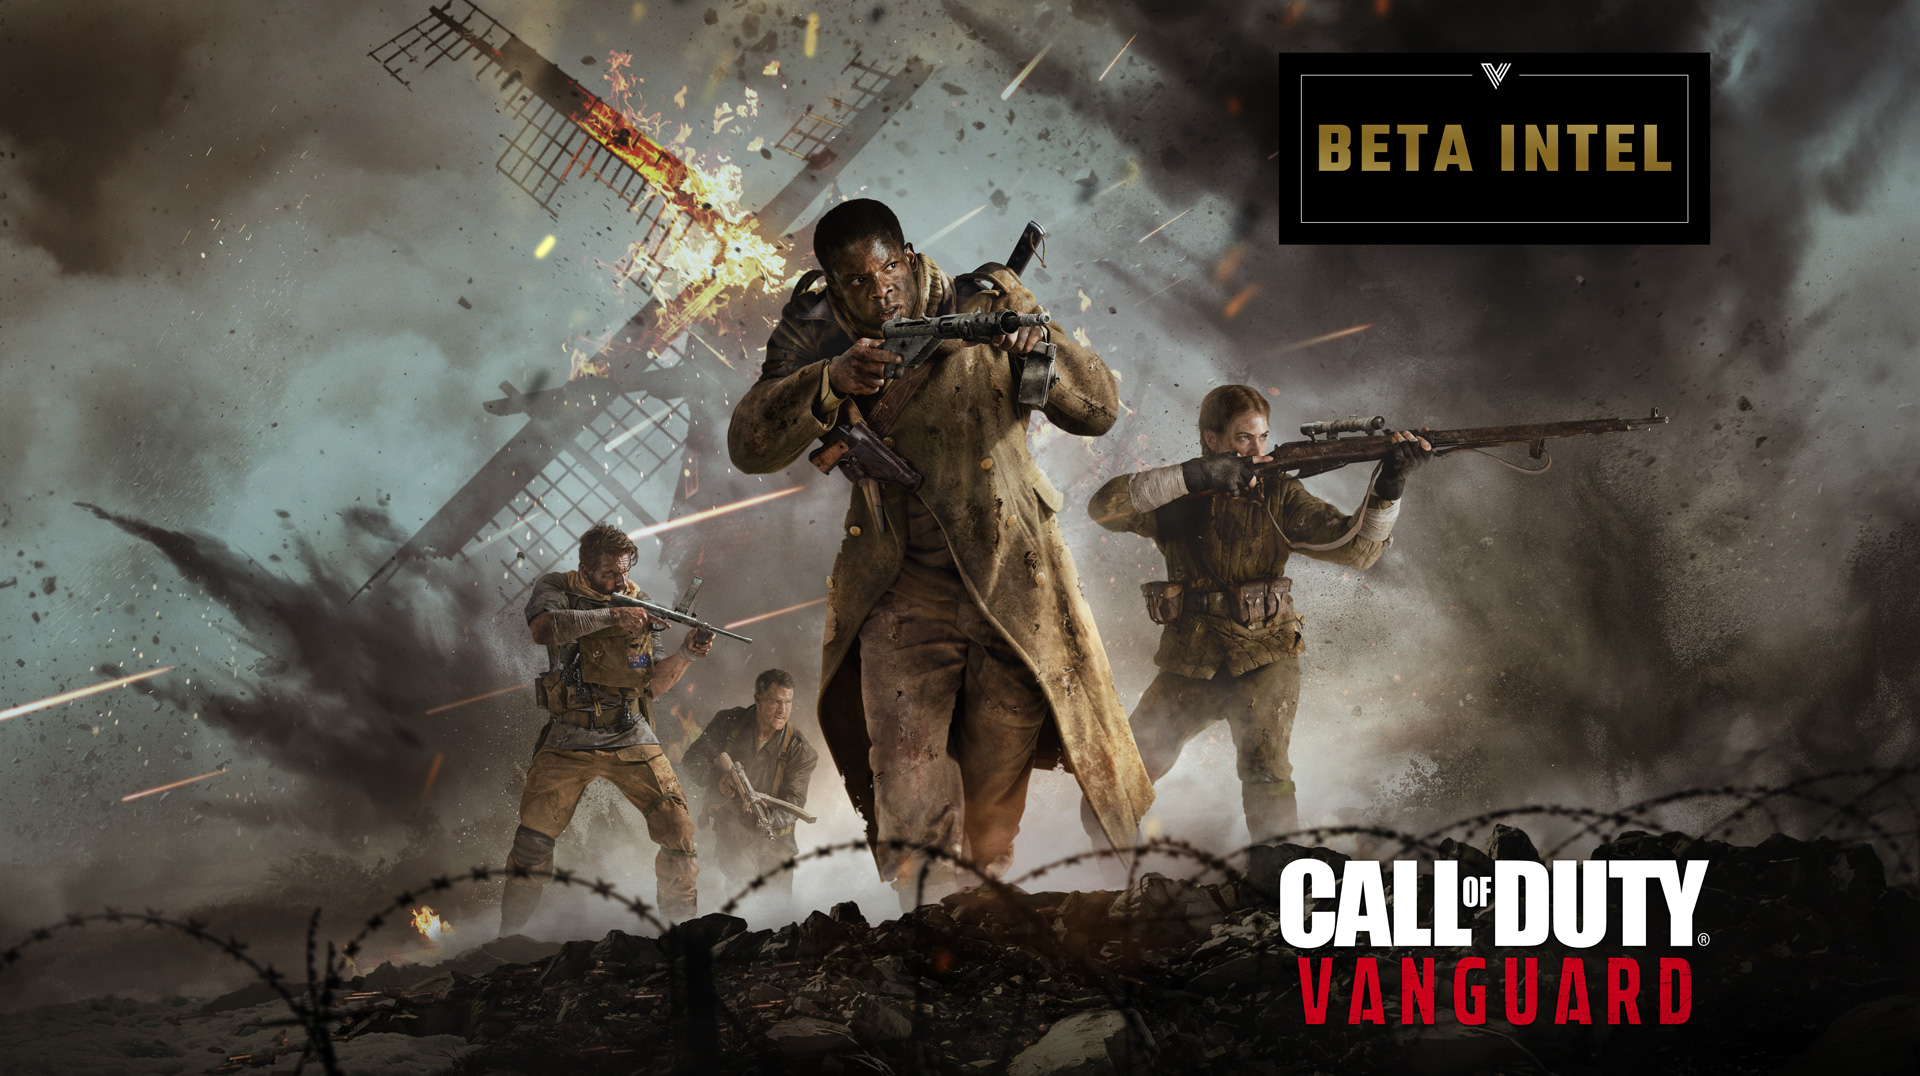 Call of Duty®: Vanguard - Call of Duty: Vanguard